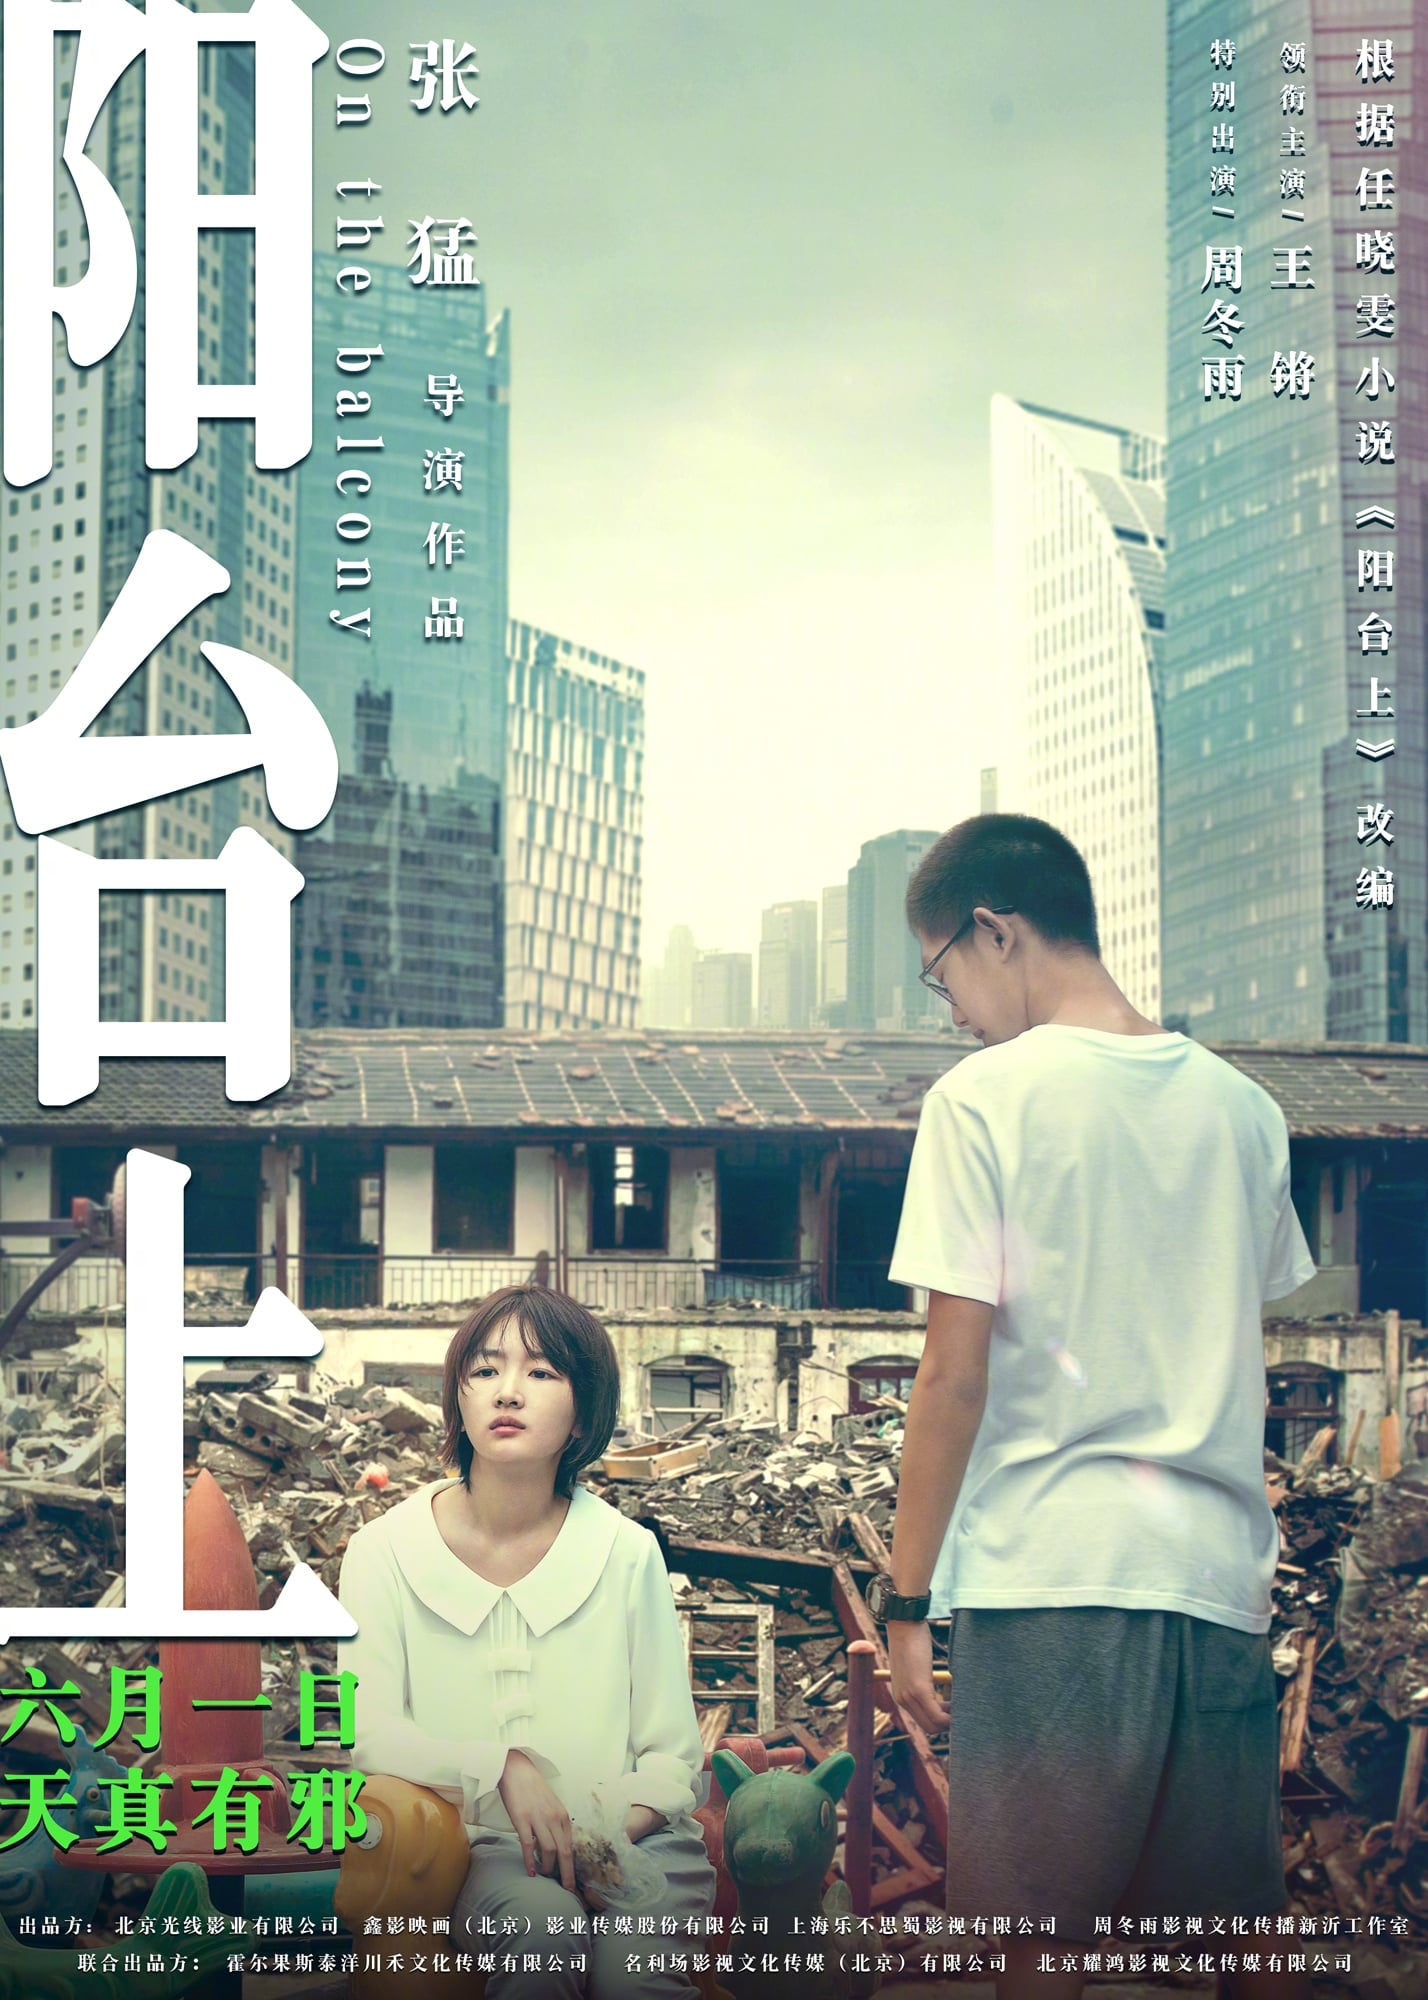 ⓿⓿ Zhou Dongyu - Actress - China - Filmography - TV Drama Series - Chinese  Movies